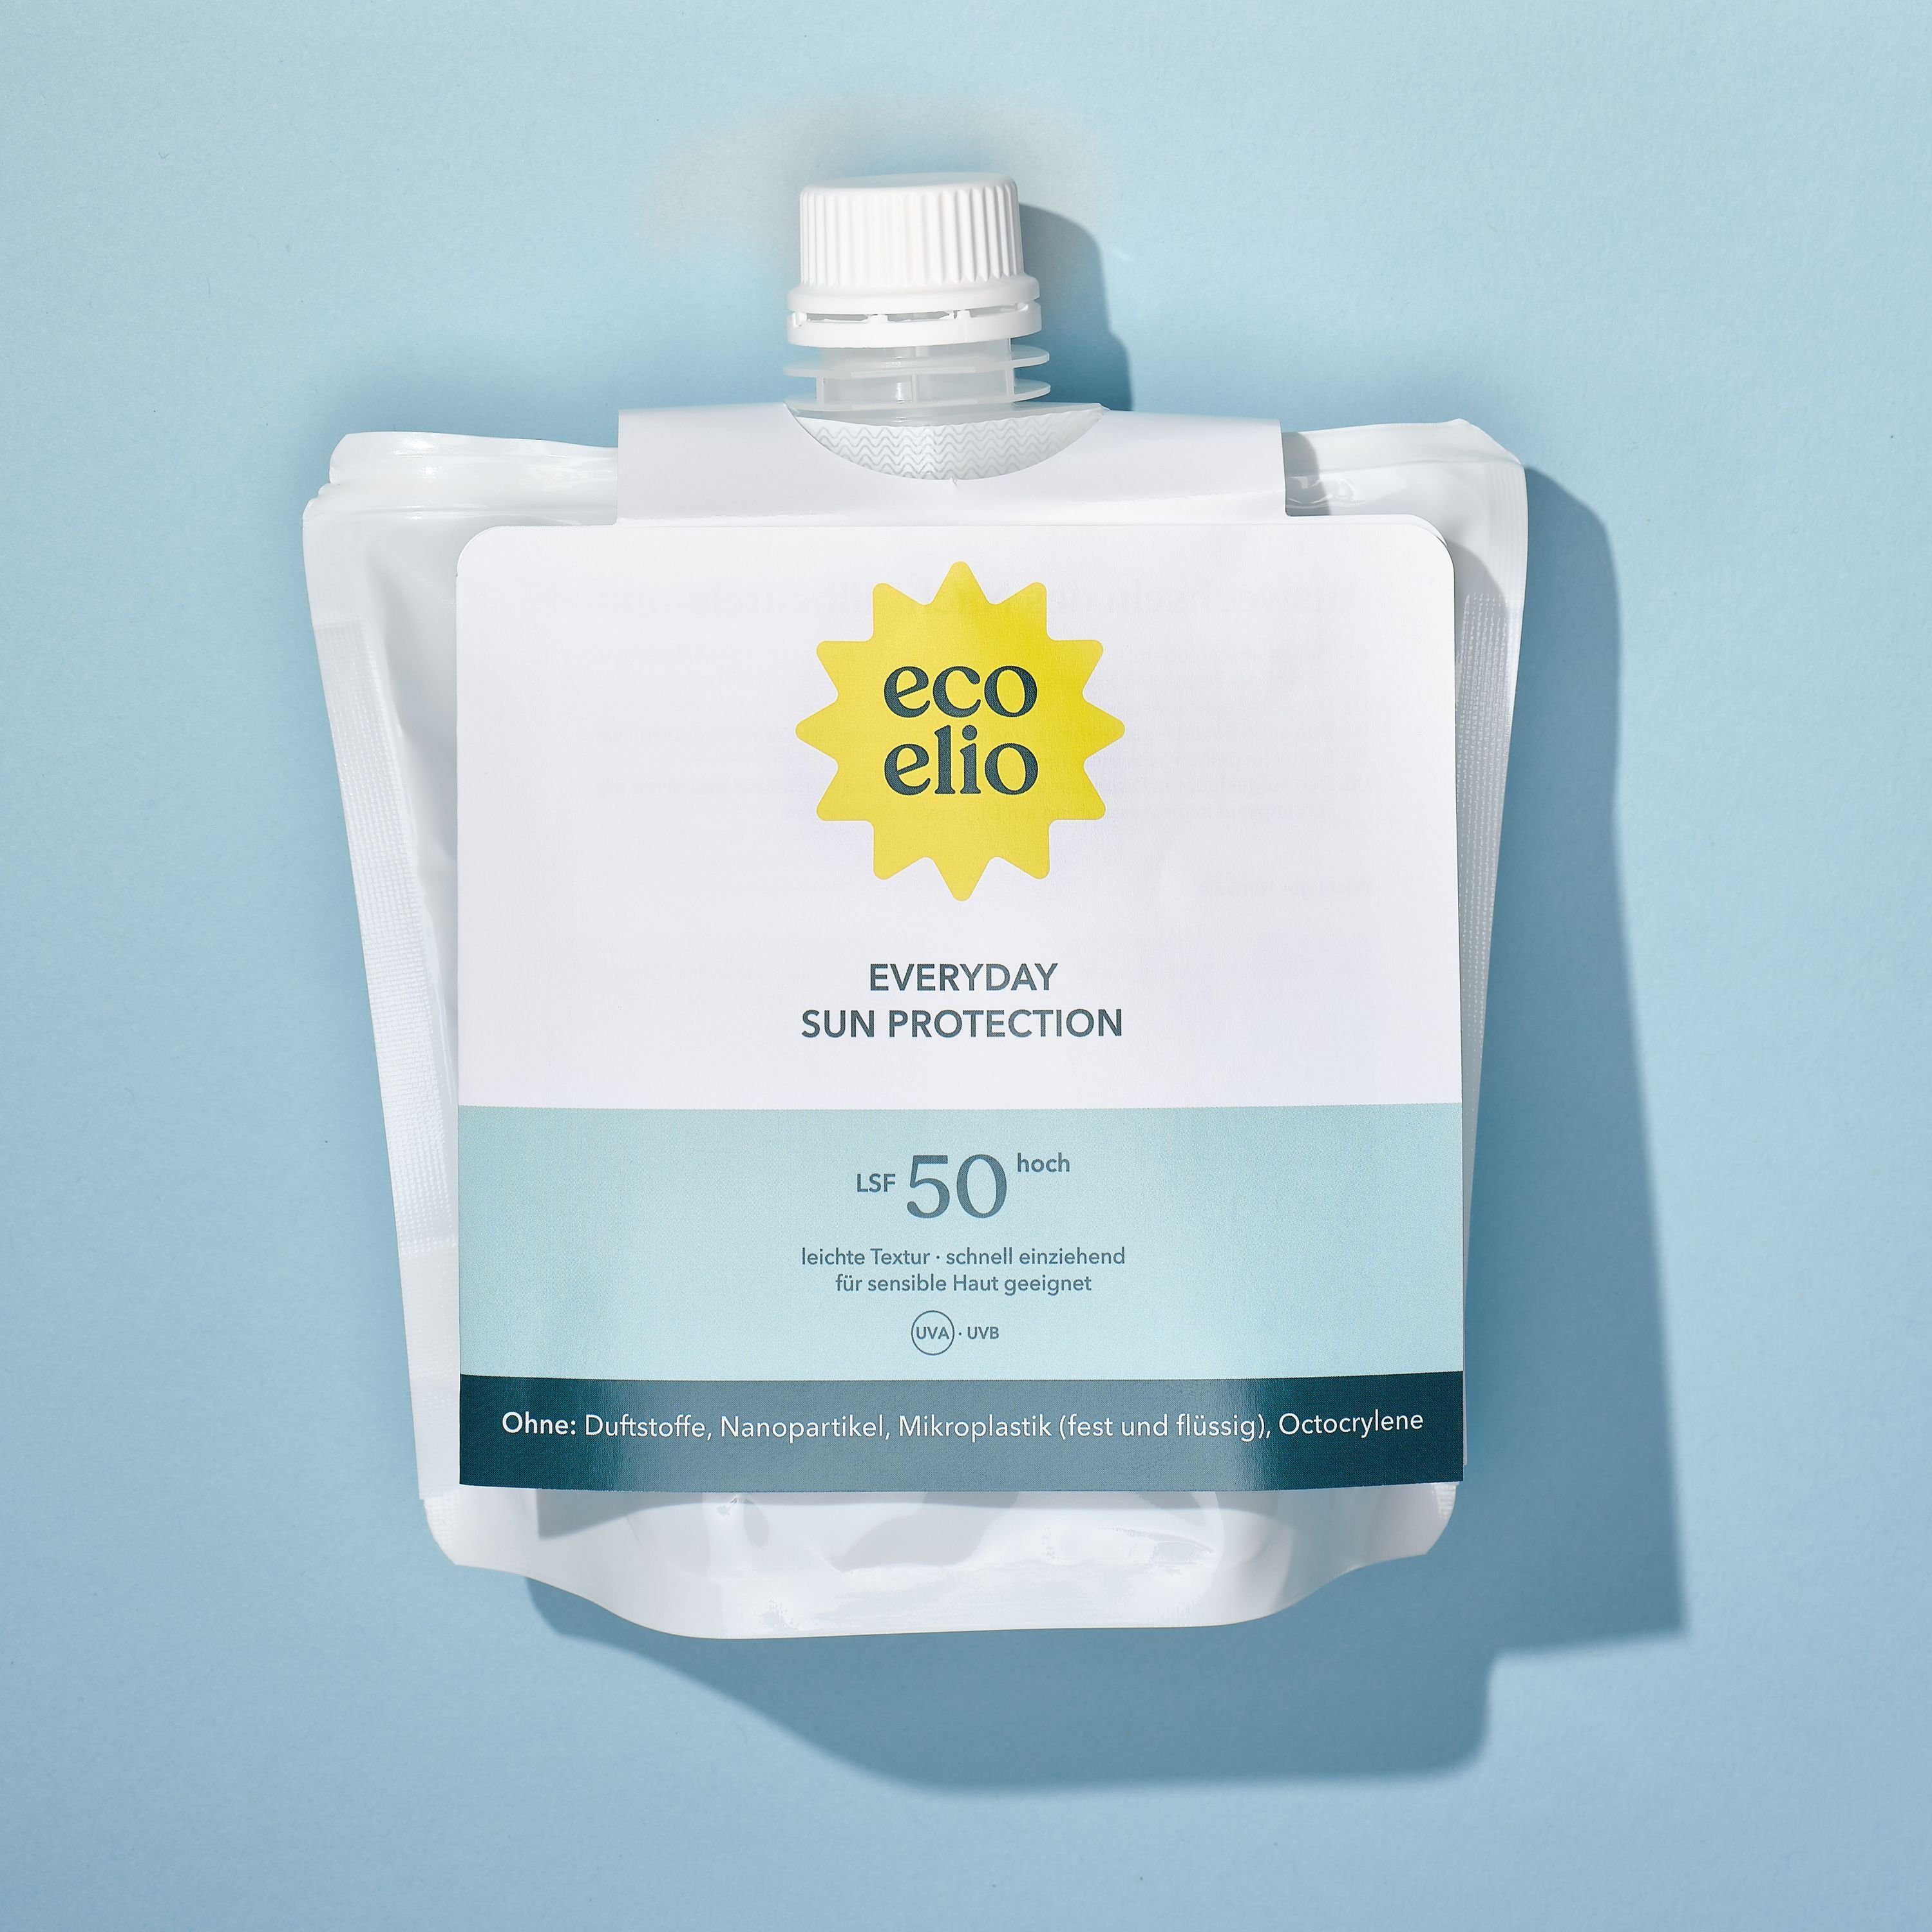 eco elio 50 Nachhaltig Nachfüllpack, schnell LSF & einziehend Hautverträglich, Sonnenschutzfluid Refill